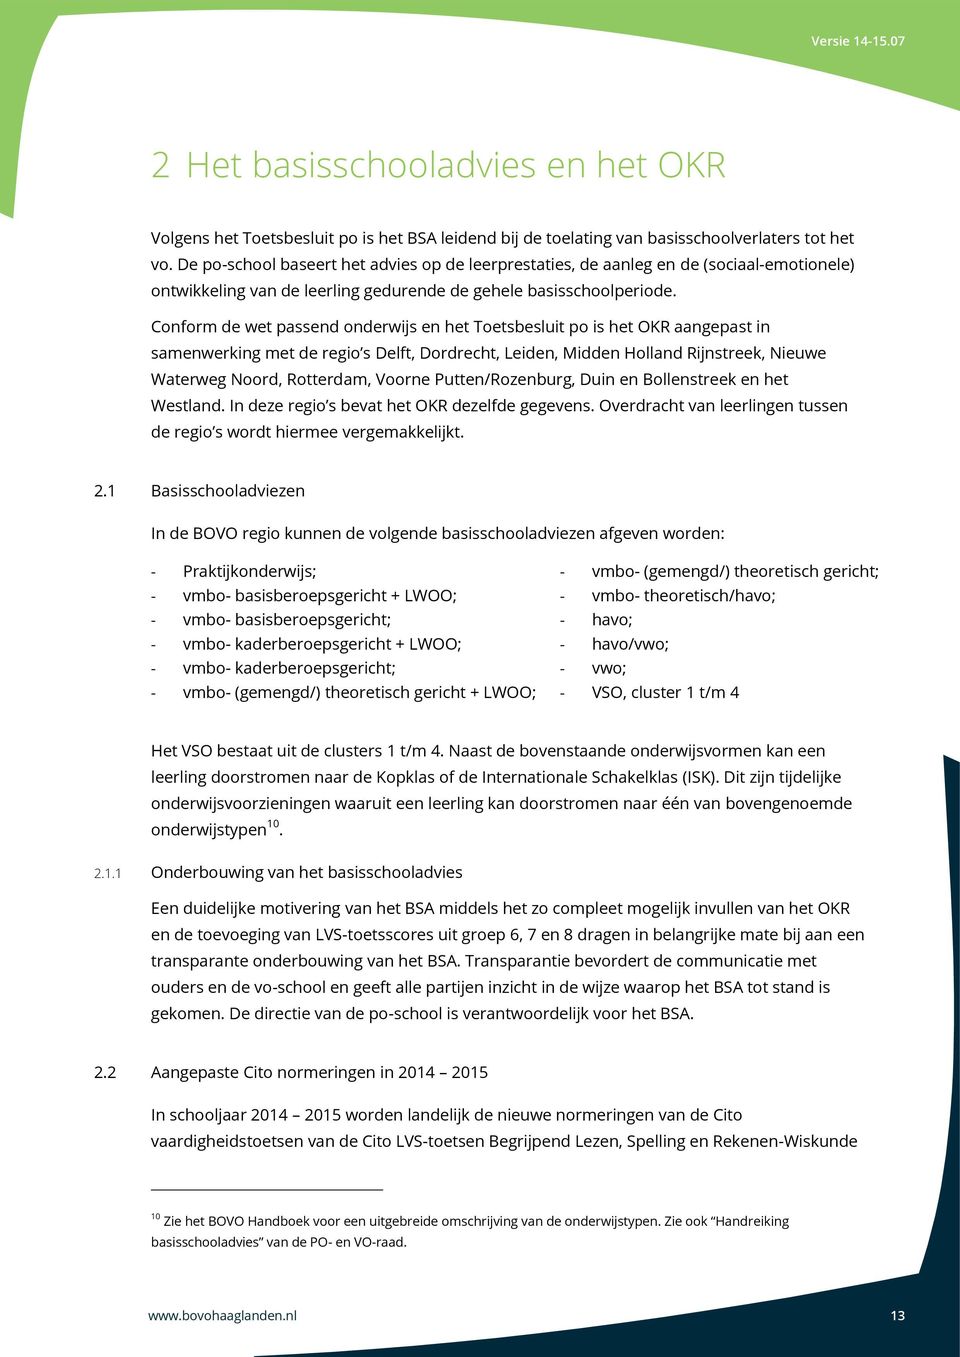 Conform de wet passend onderwijs en het Toetsbesluit po is het OKR aangepast in samenwerking met de regio s Delft, Dordrecht, Leiden, Midden Holland Rijnstreek, Nieuwe Waterweg Noord, Rotterdam,